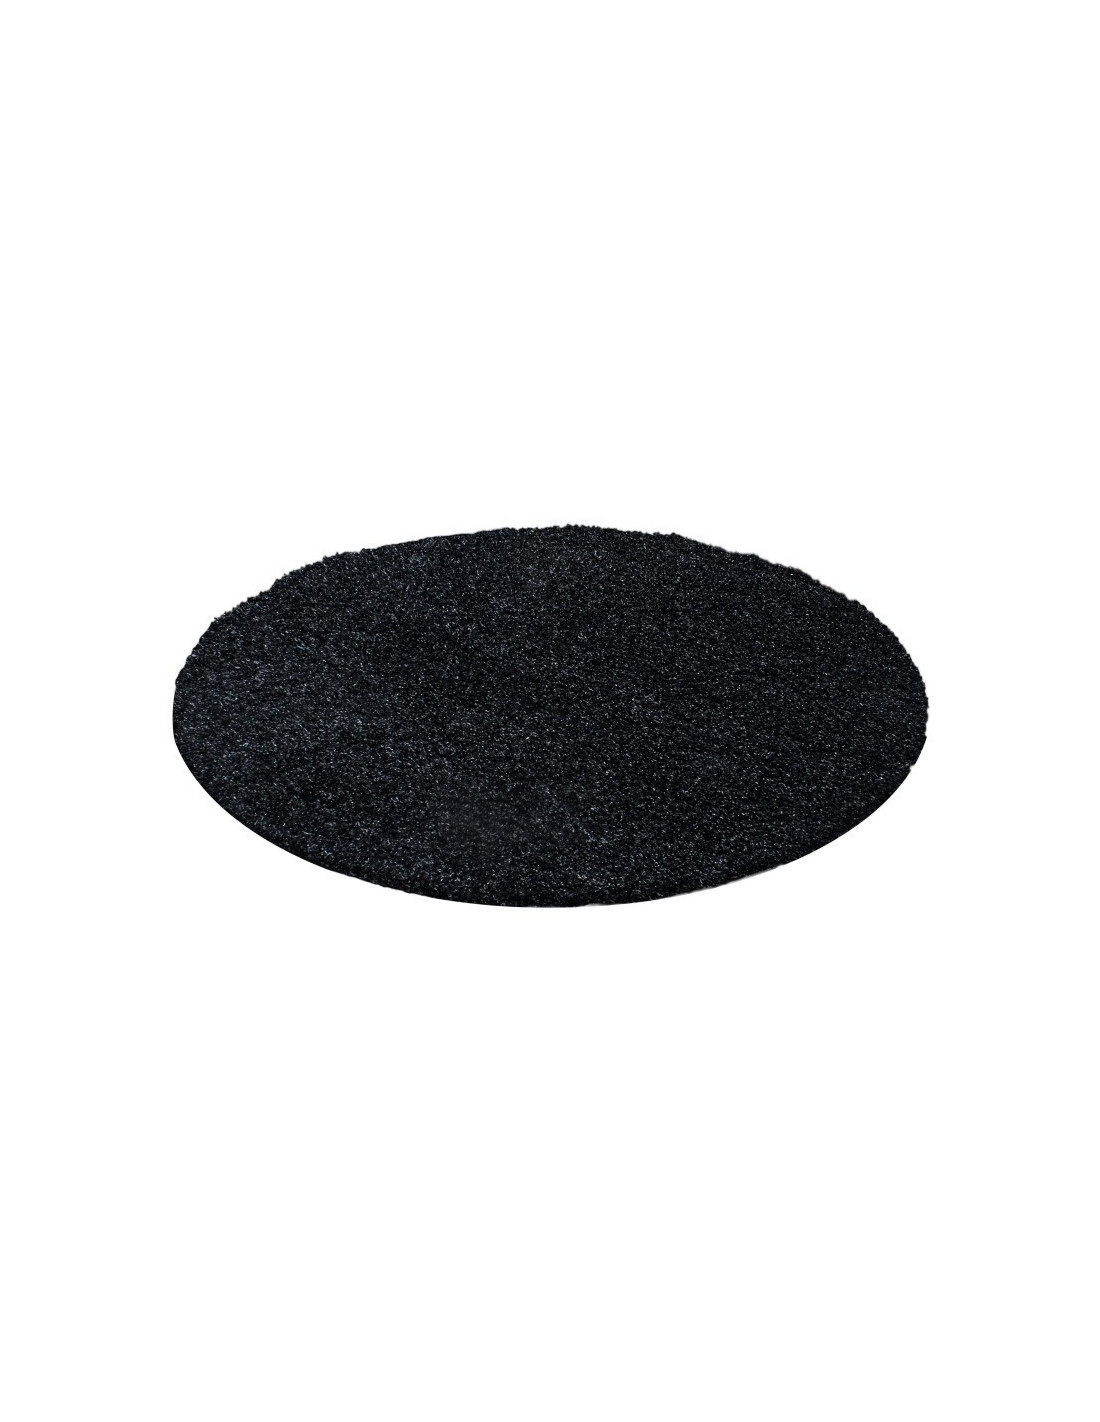 Hoogpolig tapijt, poolhoogte 3 cm, effen kleur Terra